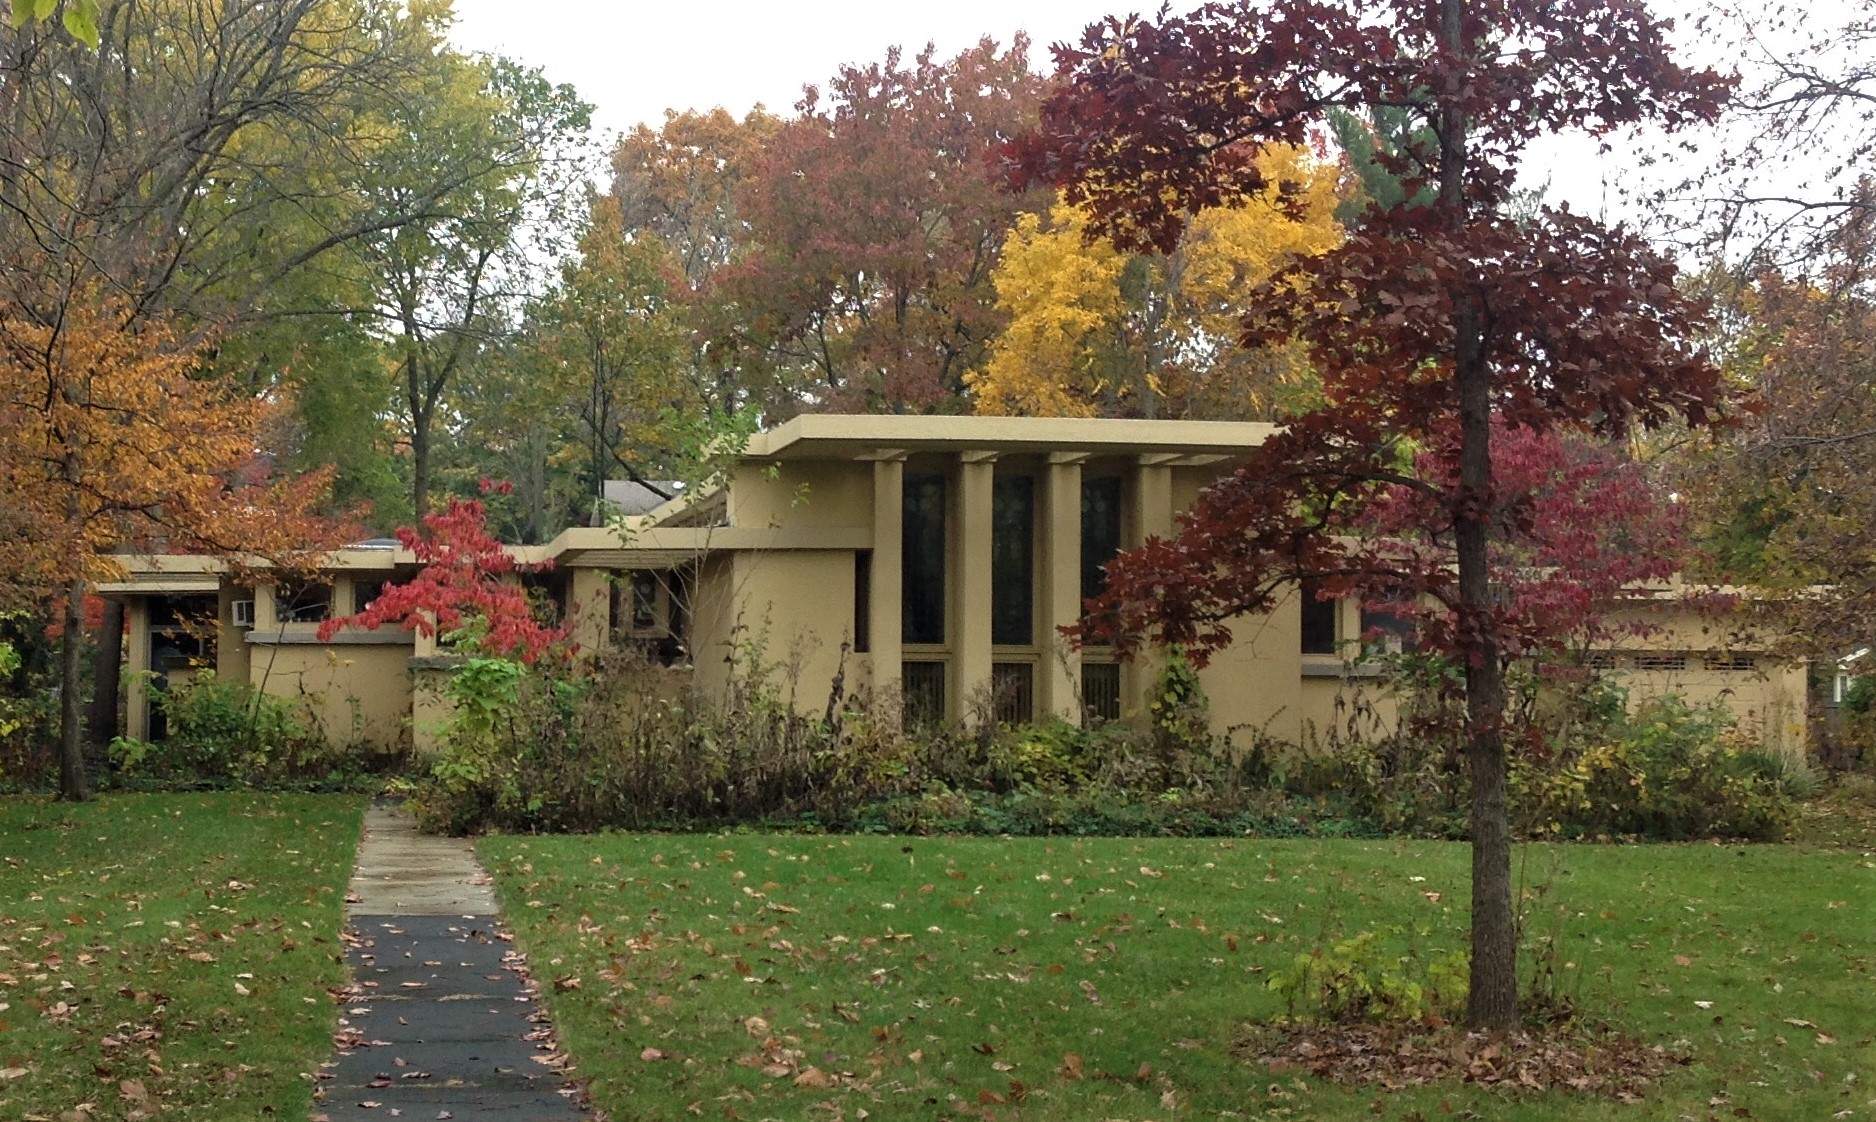 Ein Haus aus dem frühen 20. Jahrhundert inmitten von Bäumen, im Herbst